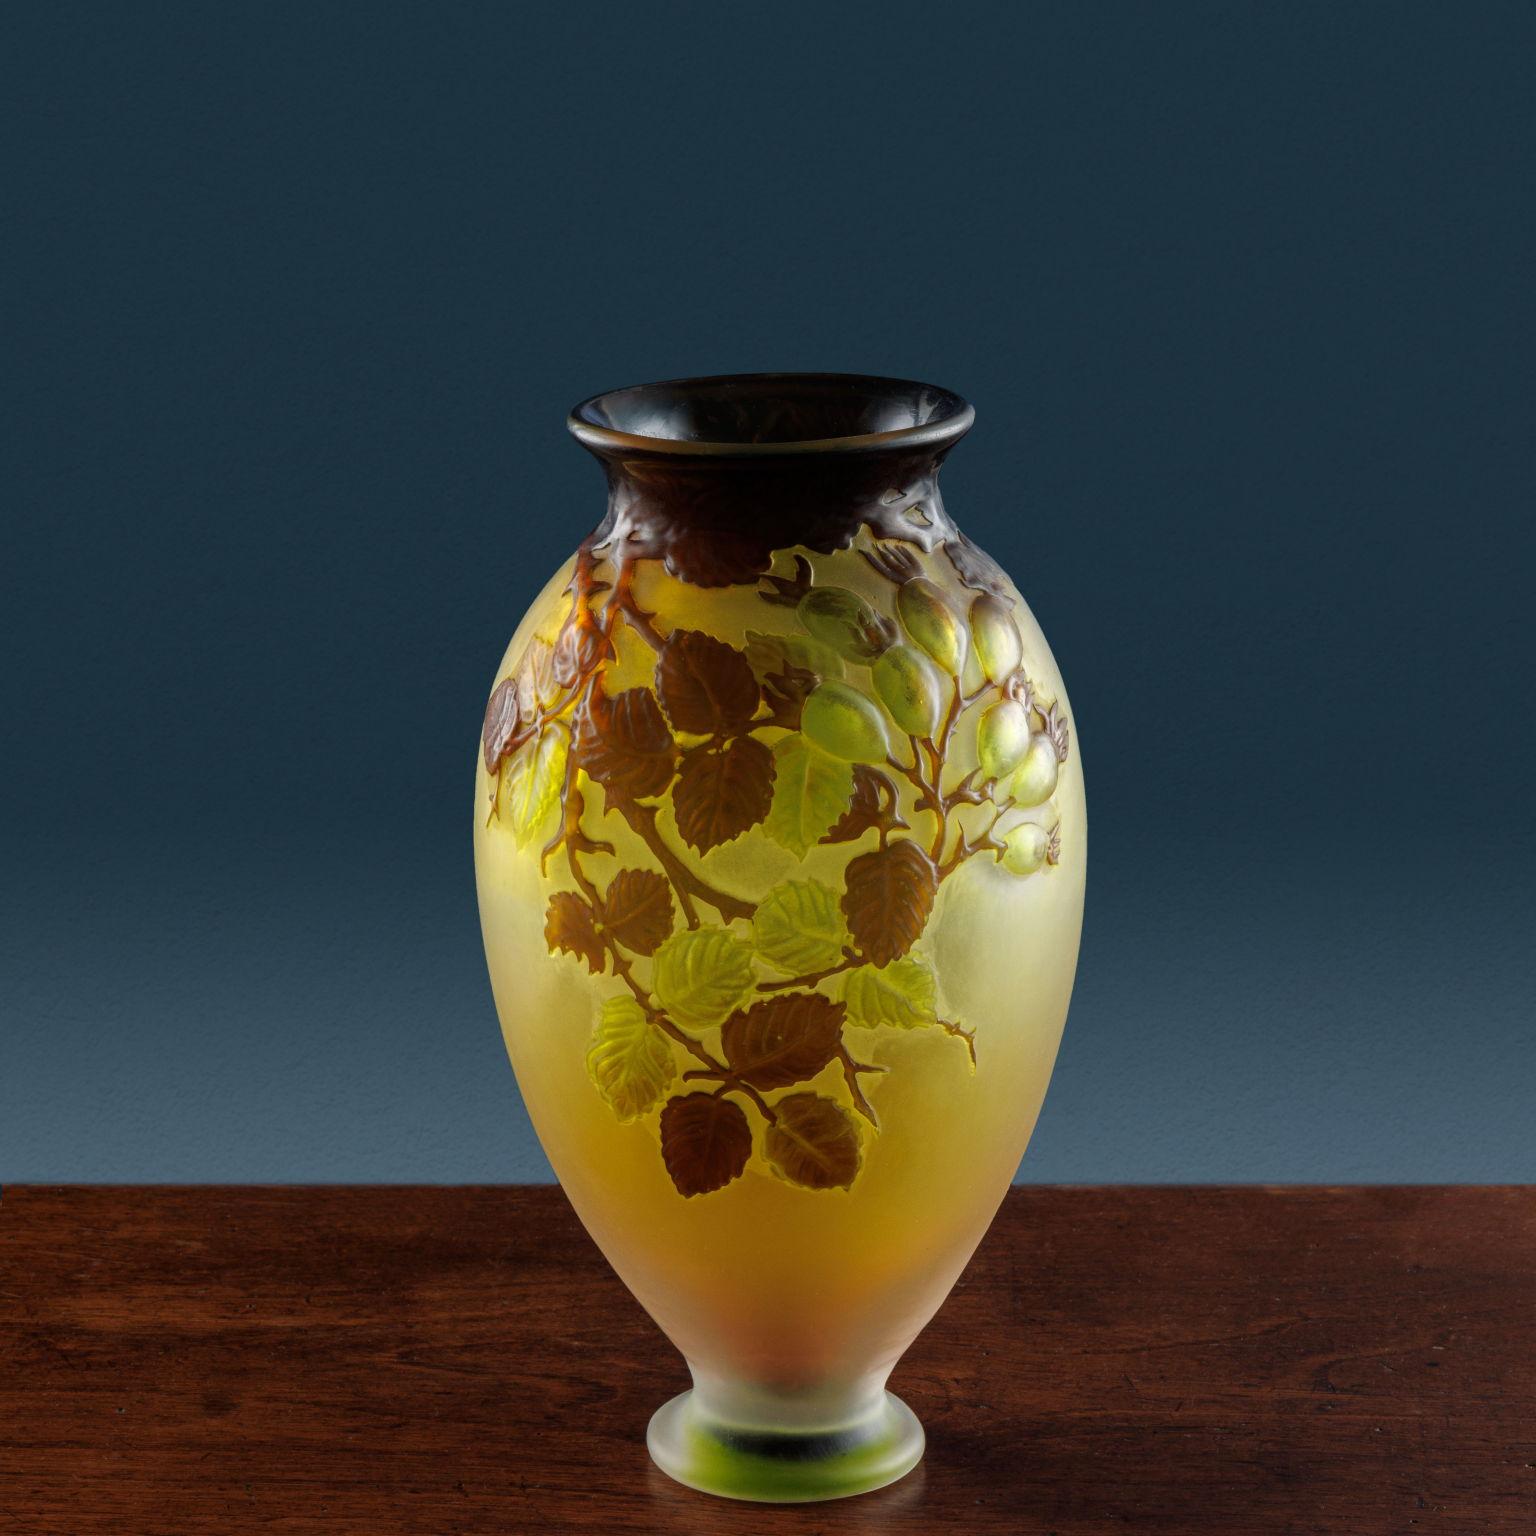 Vaso ovoidale in vetro soffiato e inciso all’acido (vetro “cammeo”), decorato con il motivo della rosa canina. Firma ad acido “Gallé” sul corpo del vaso.
Pioniere dell’Art Nouveau e fondatore dell’École de Nancy, Émile Gallé (1846-1904) è stato un